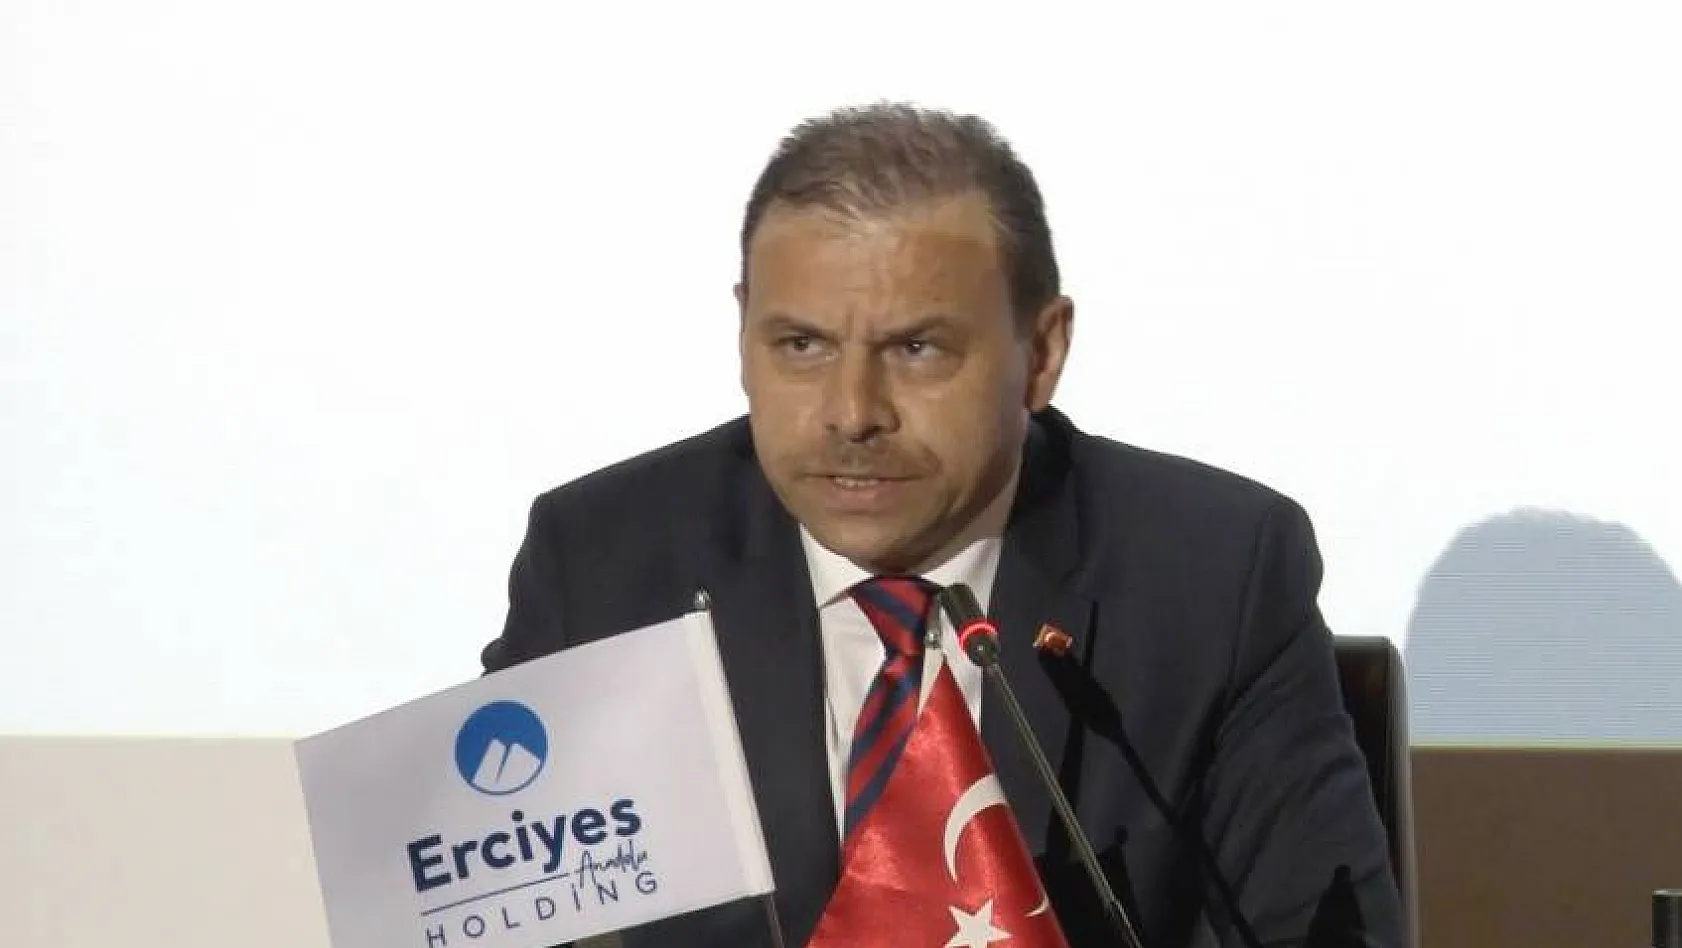 Erciyes Anadolu Holding'in cirosu yüzde 6,5 arttı